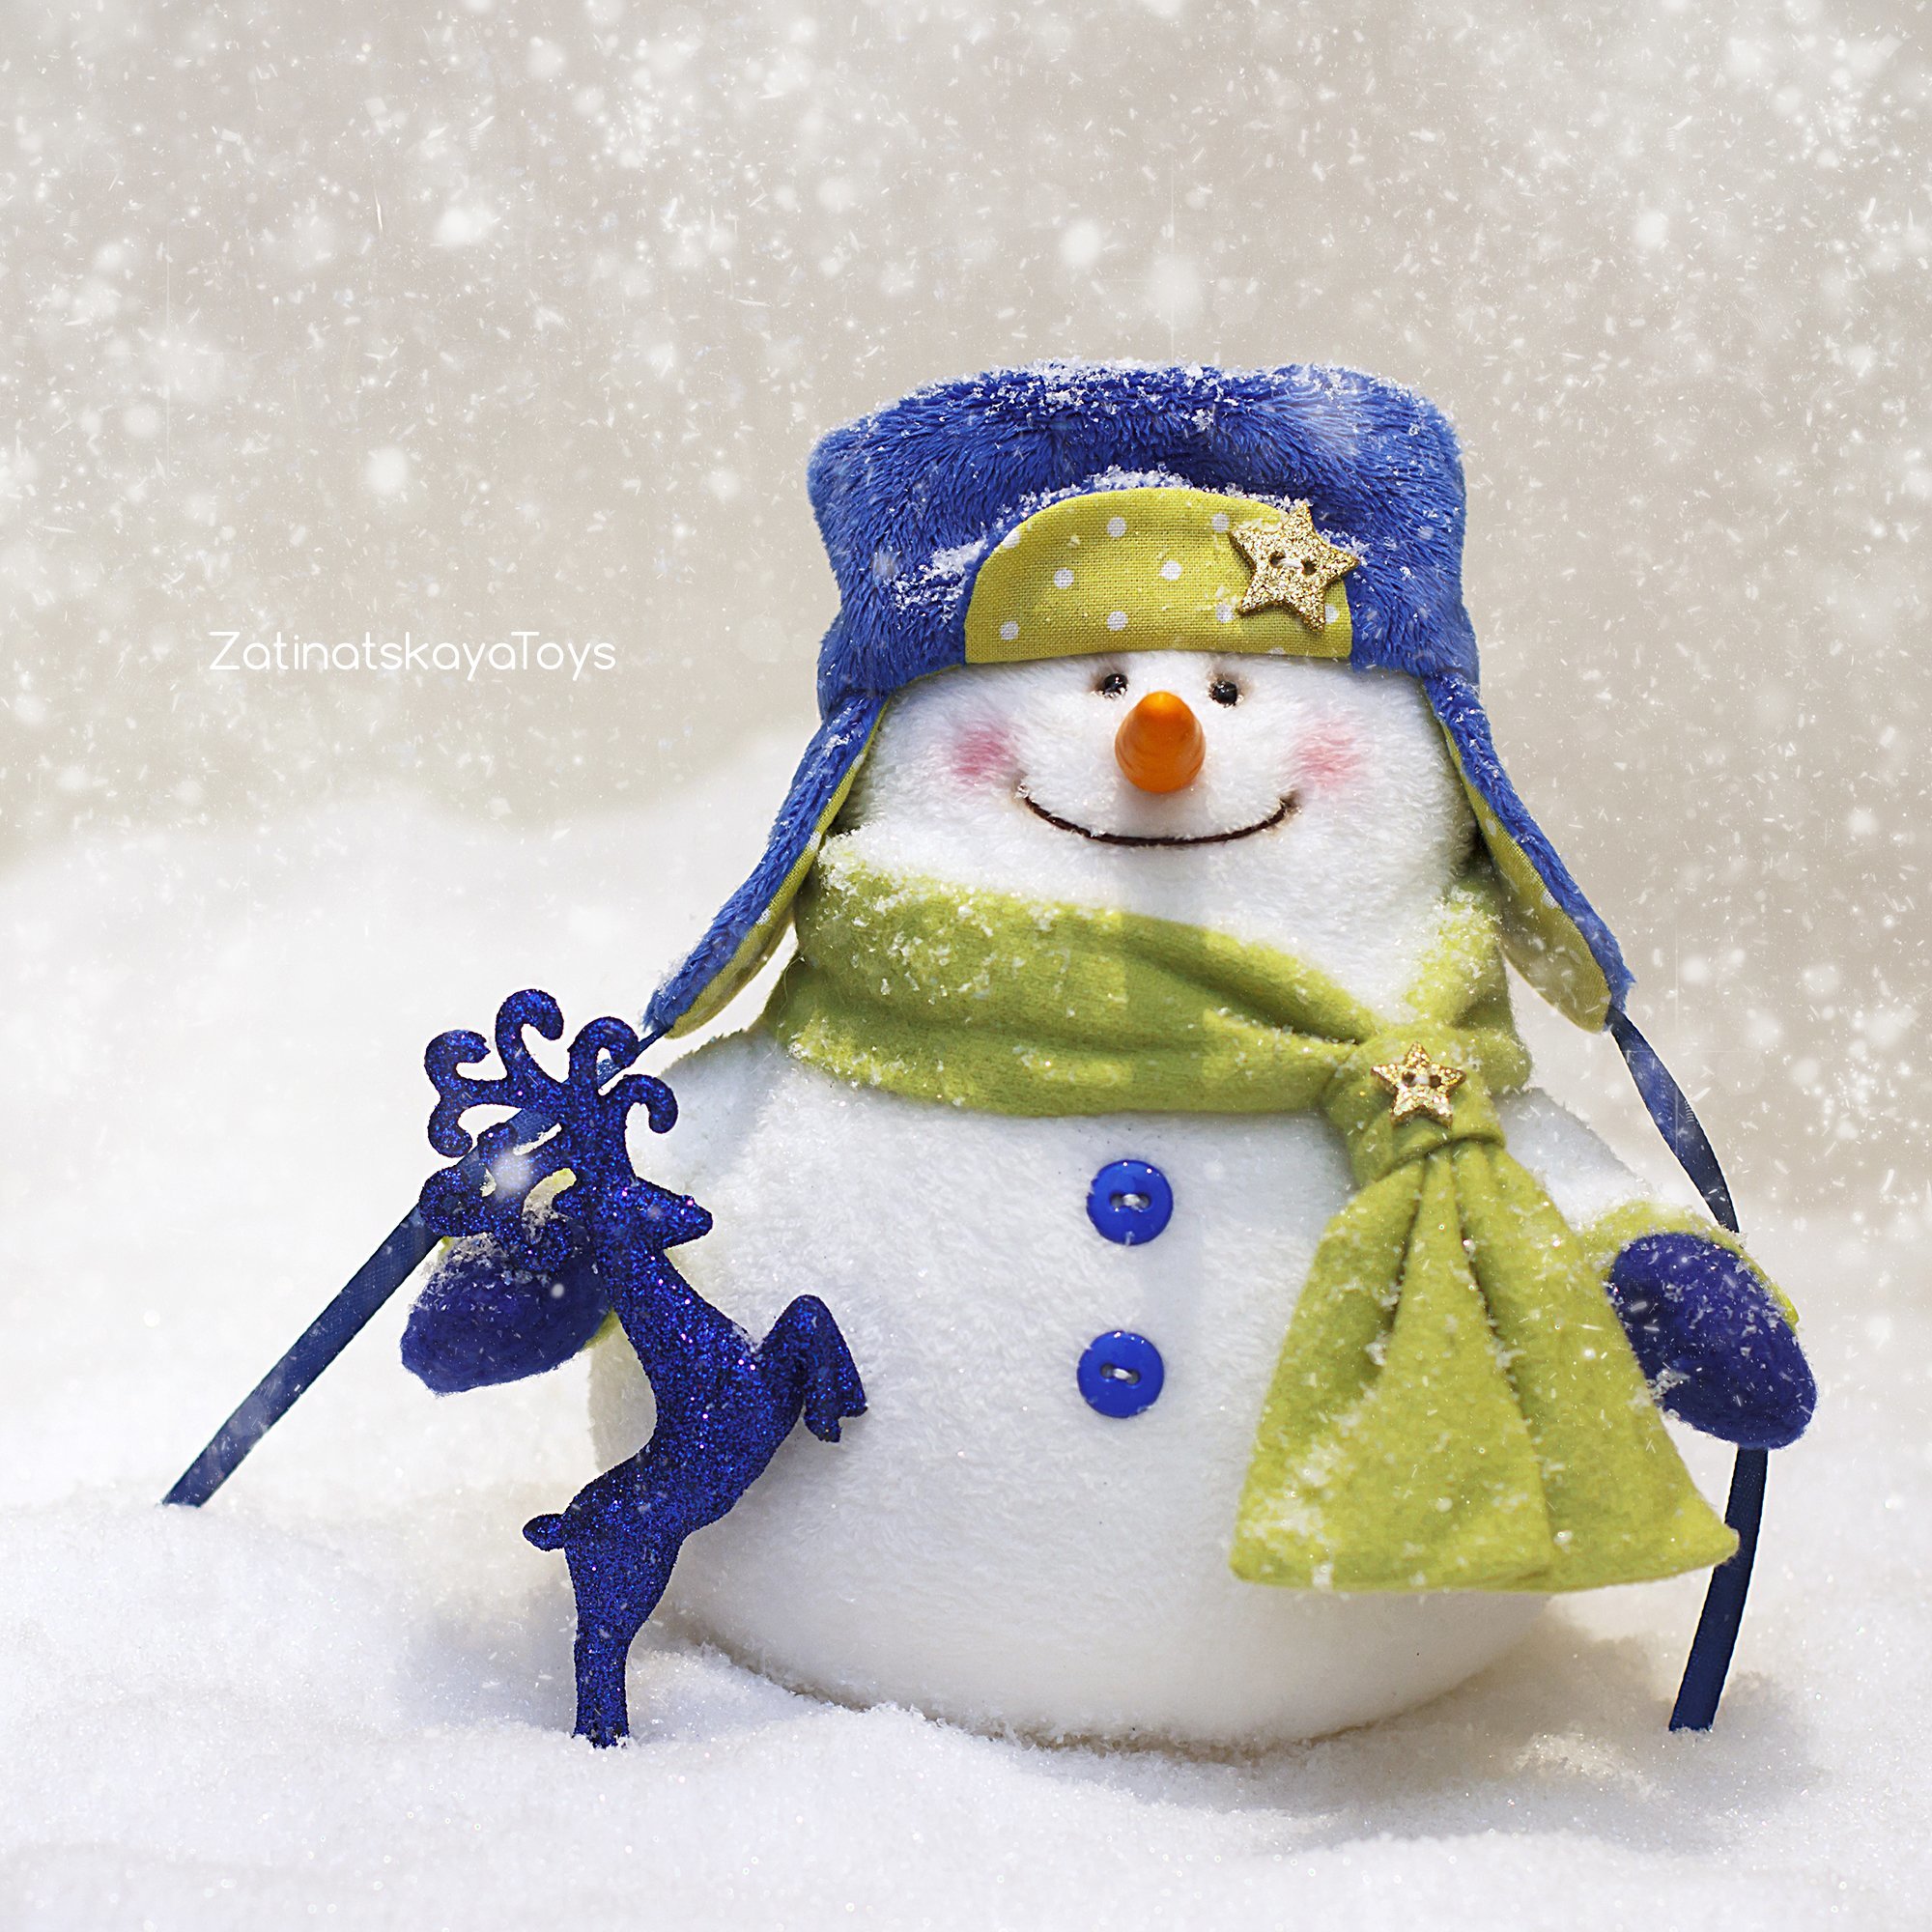 Сшить снеговика своими руками: выкройка, пошаговый мк, подборка схем